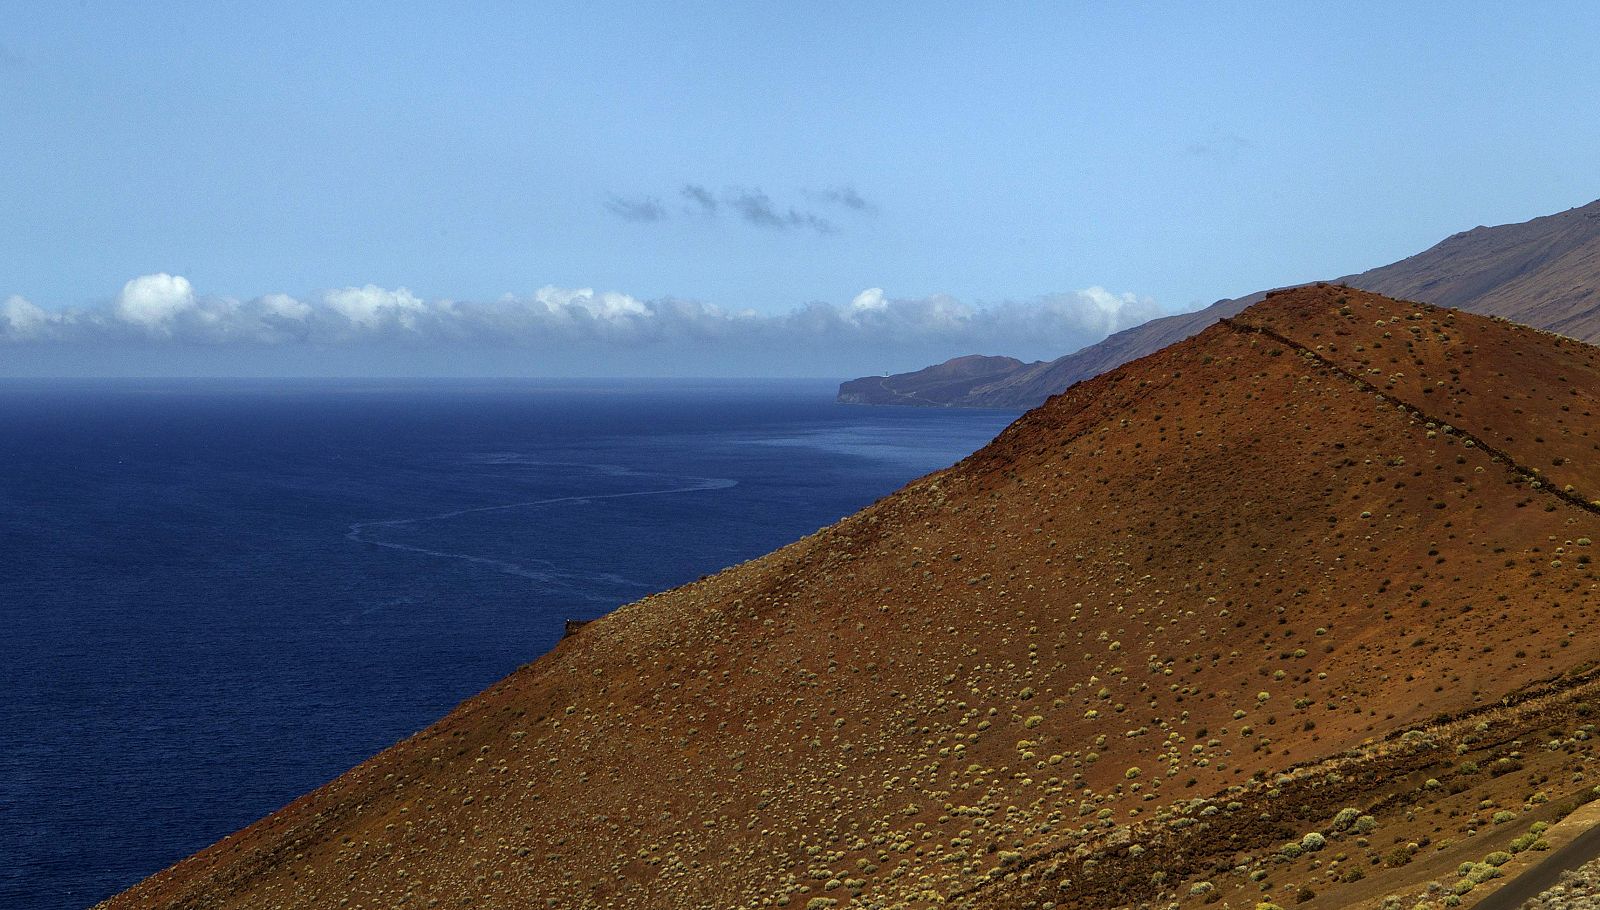 A general view shows a 'El mar de las calmas' on the south coast of the Canary Island of El Hierro